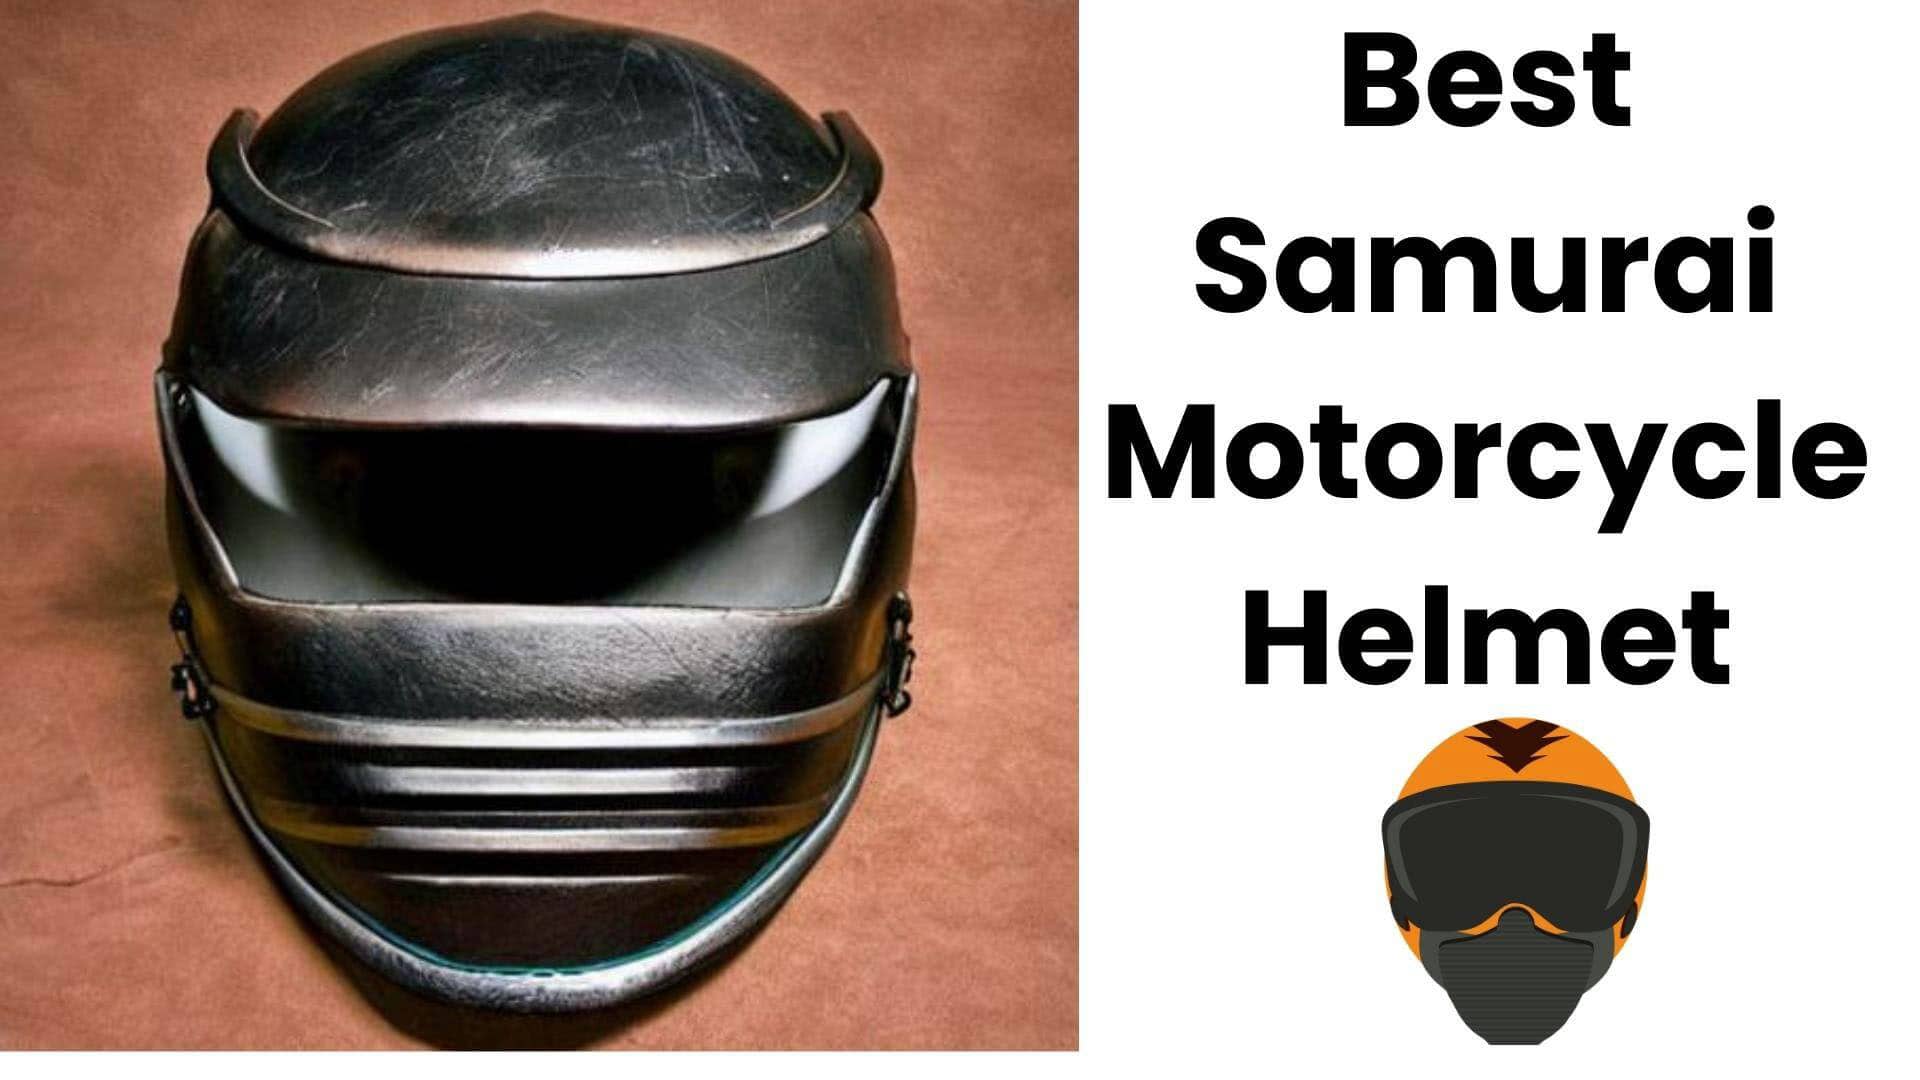 What is a samurai motorcycle helmet?